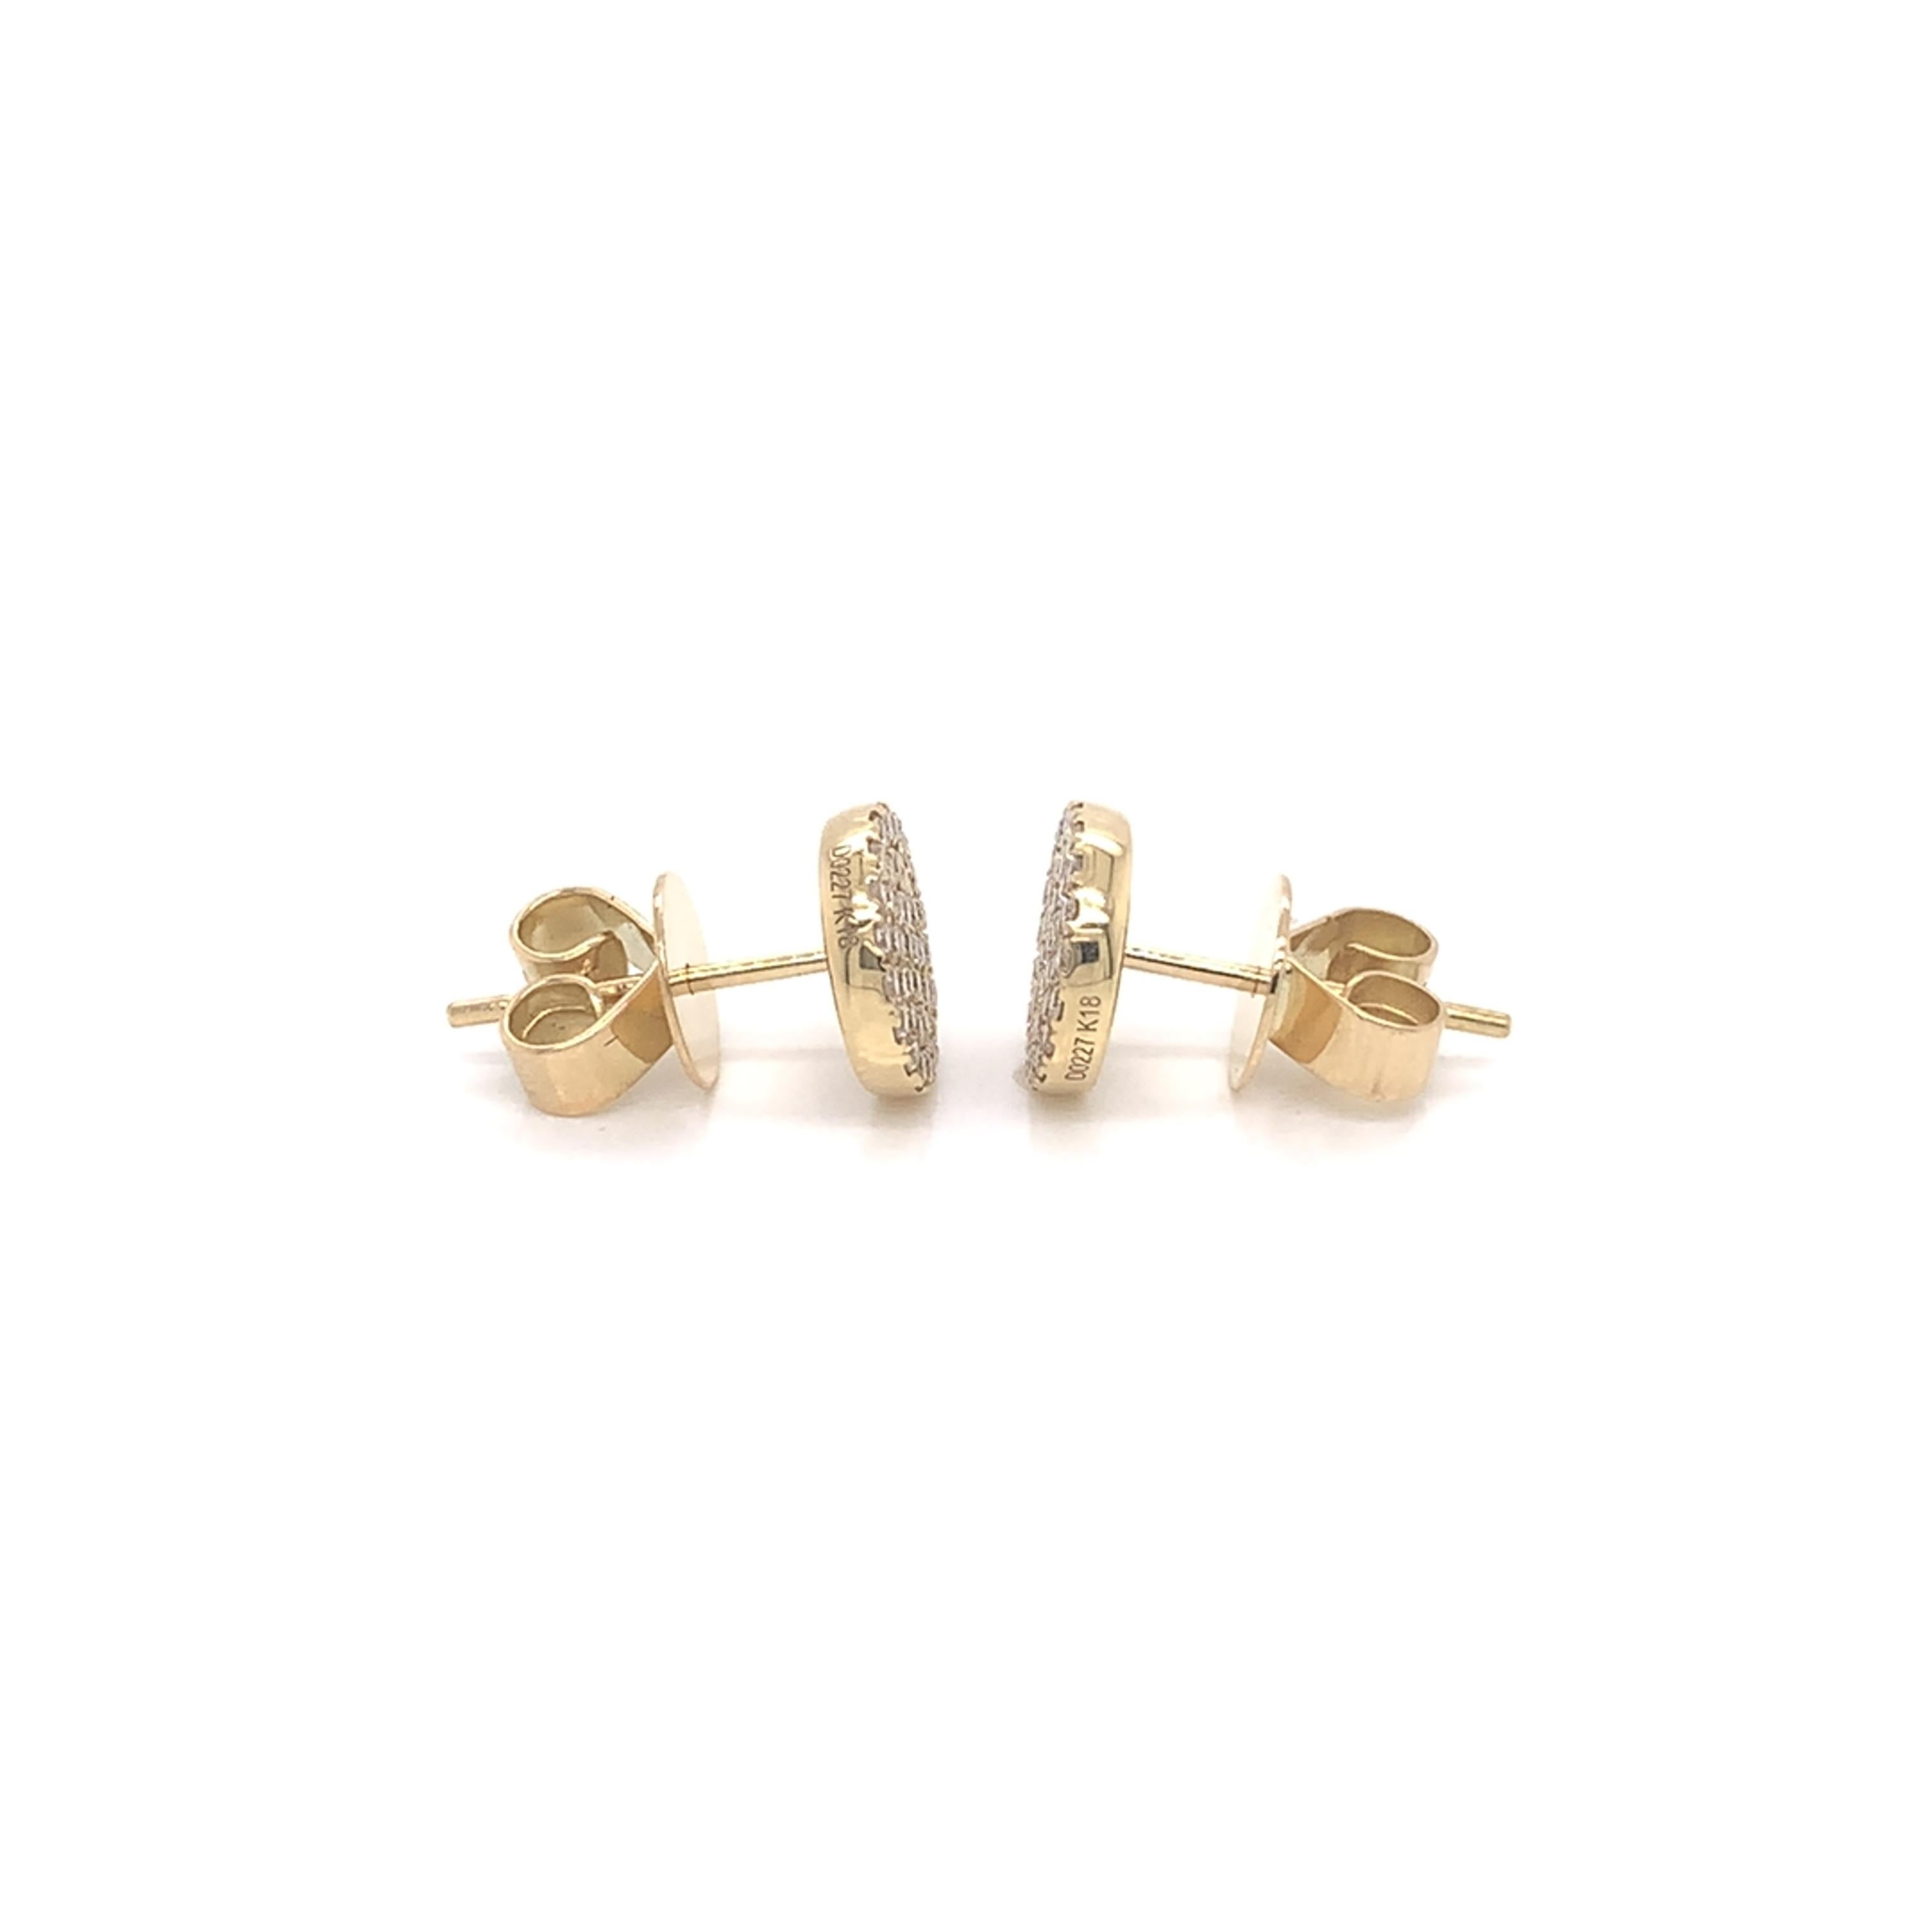 Brilliant Cut Diamond Cluster Stud Earrings